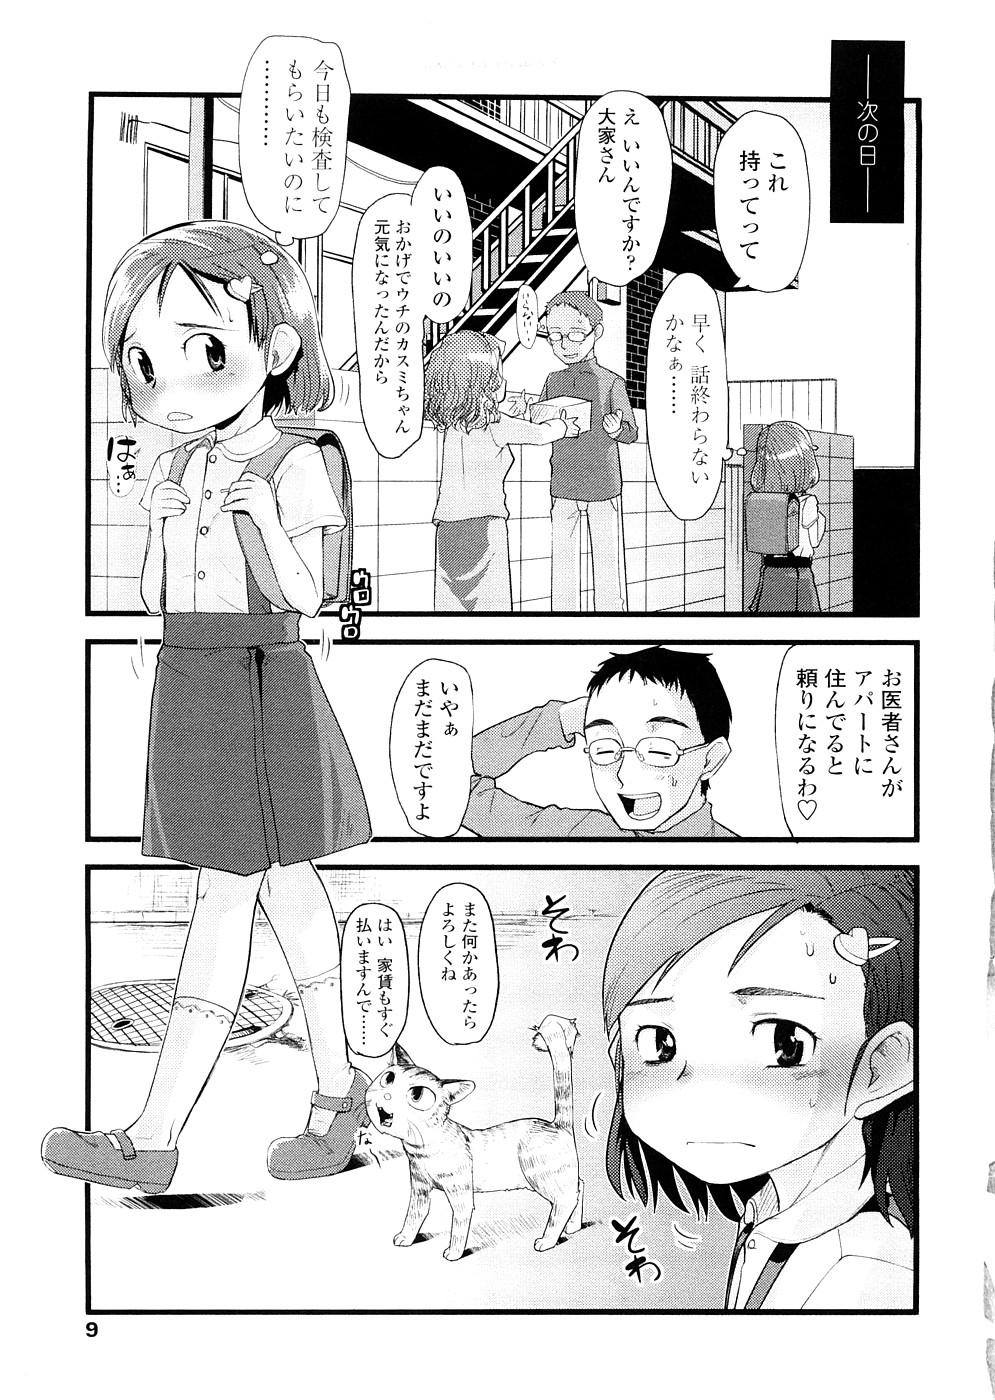 Analsex Chiisana Koigokoro Chaturbate - Page 9